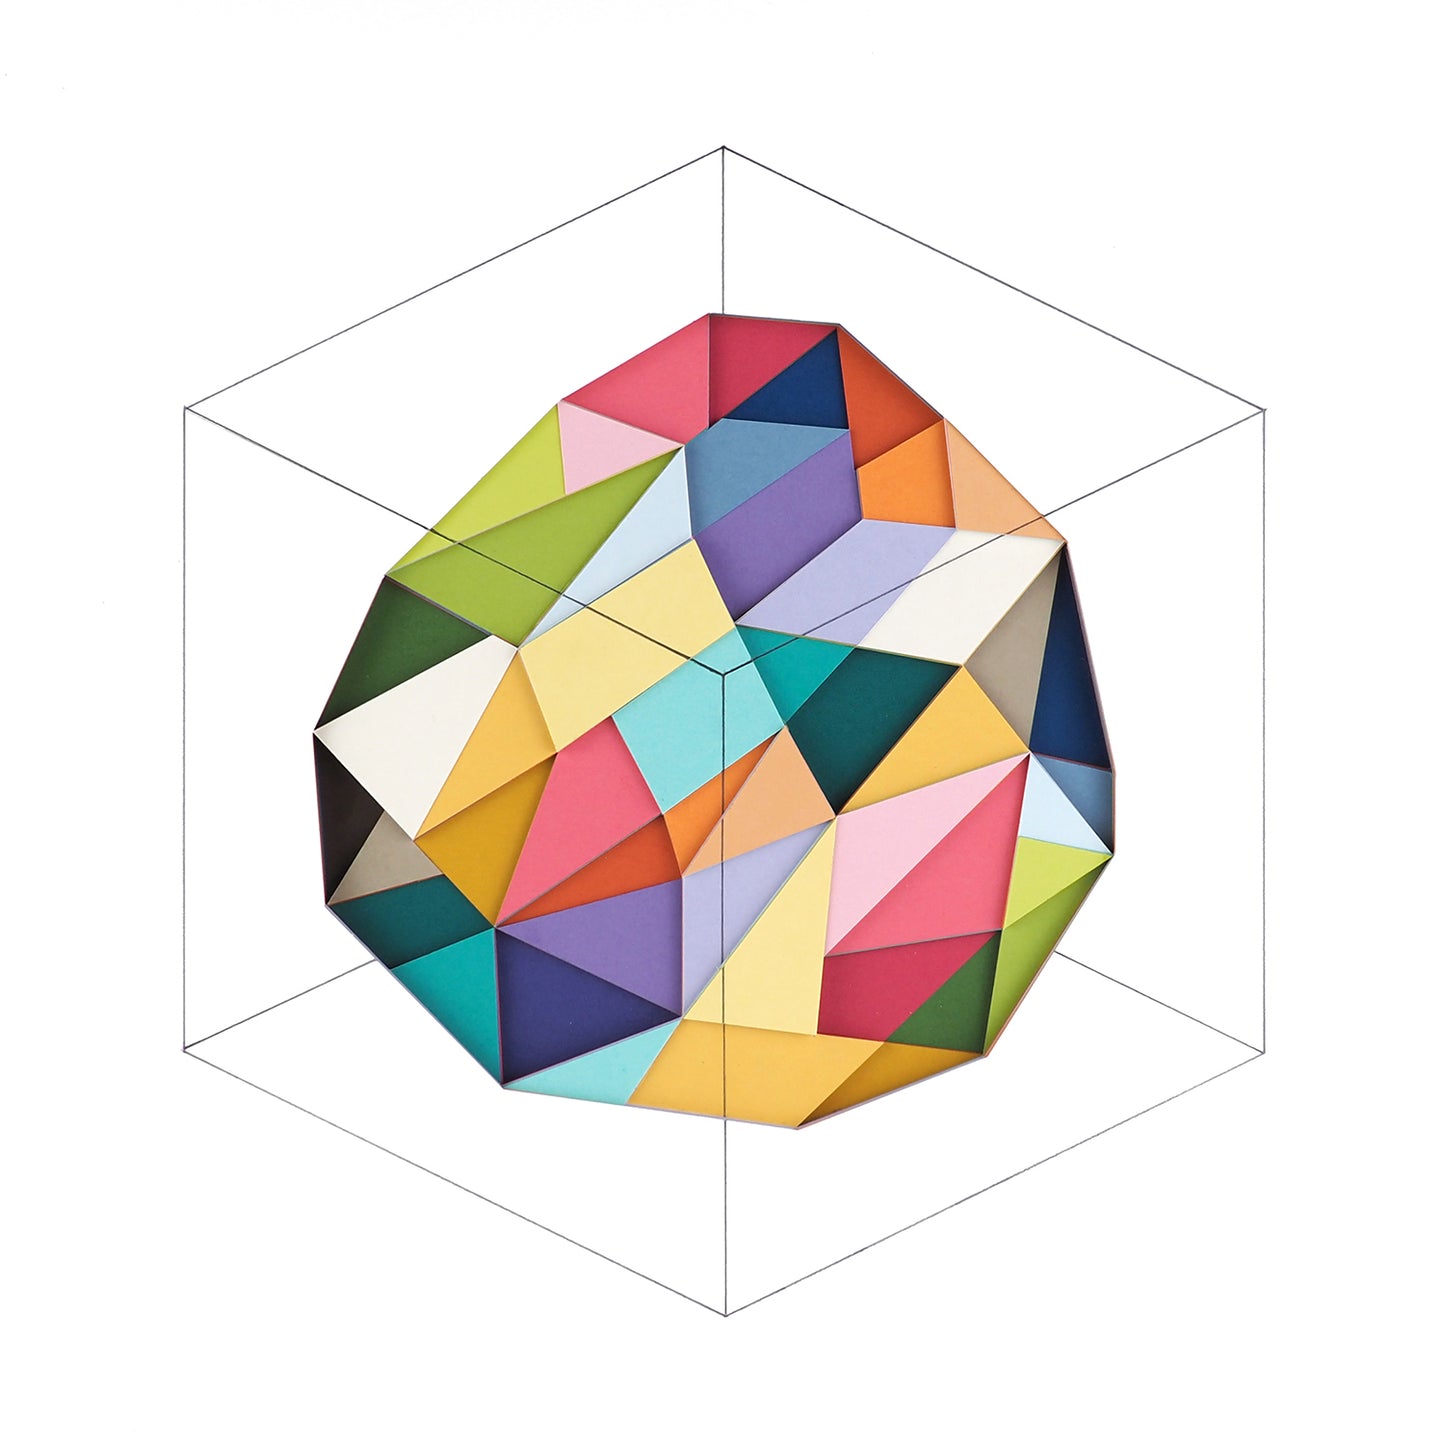 Huntz Liu - Imaginary Cube 1